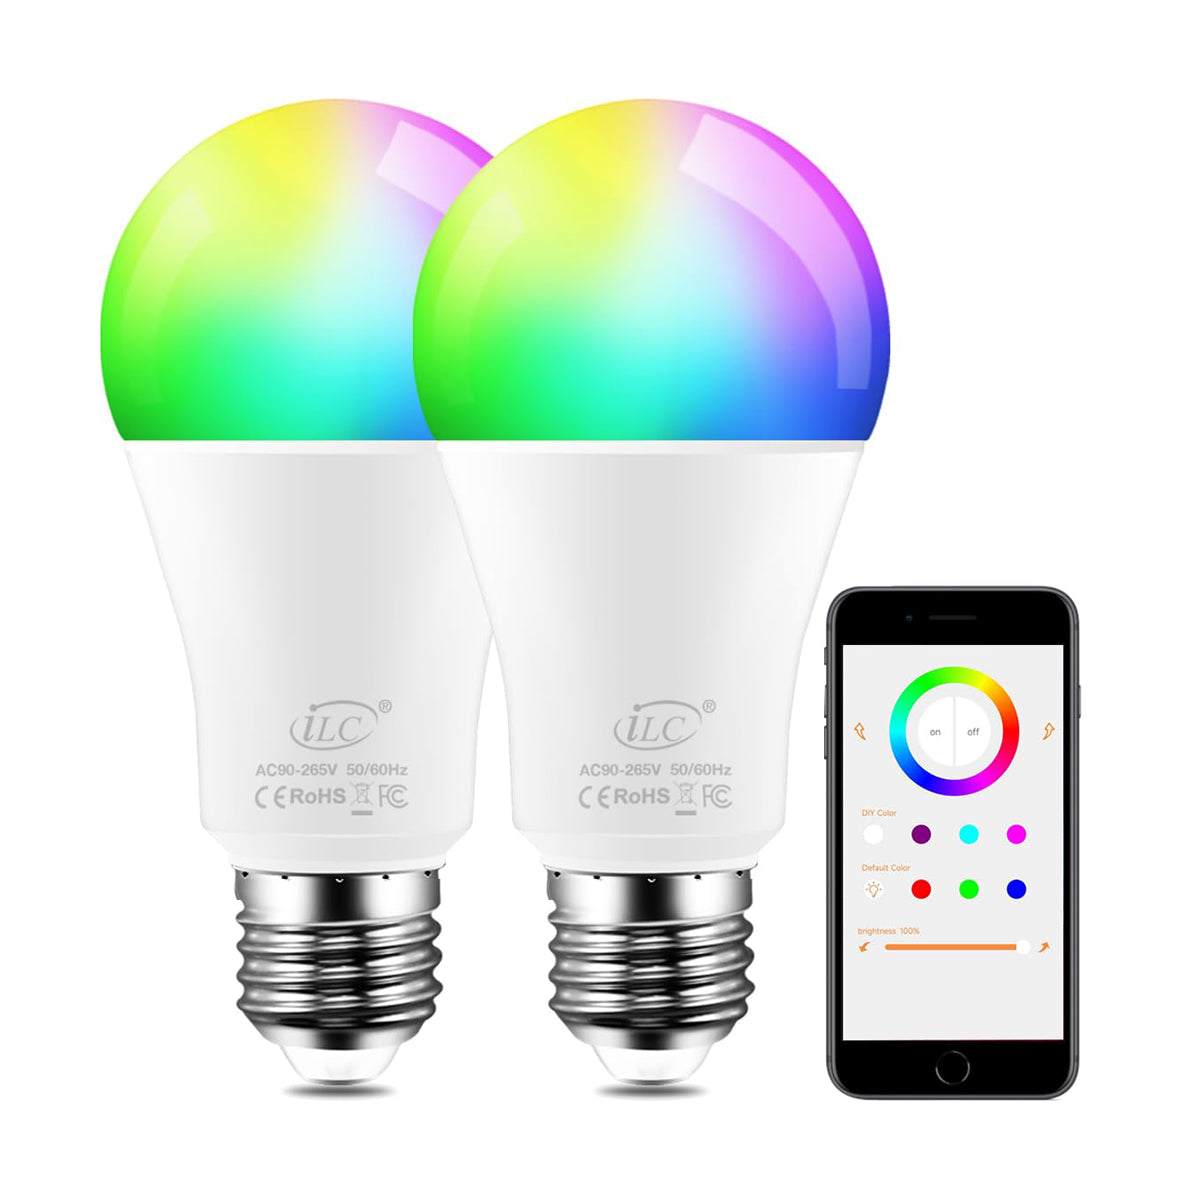 iLC Bombilla LED que cambia de color RGBW 2700K blanco cálido, controlada por aplicación, sincronización con música, regulable RGB multicolor equivalente a 70 W, tornillo Edison E26 (paquete de 2)